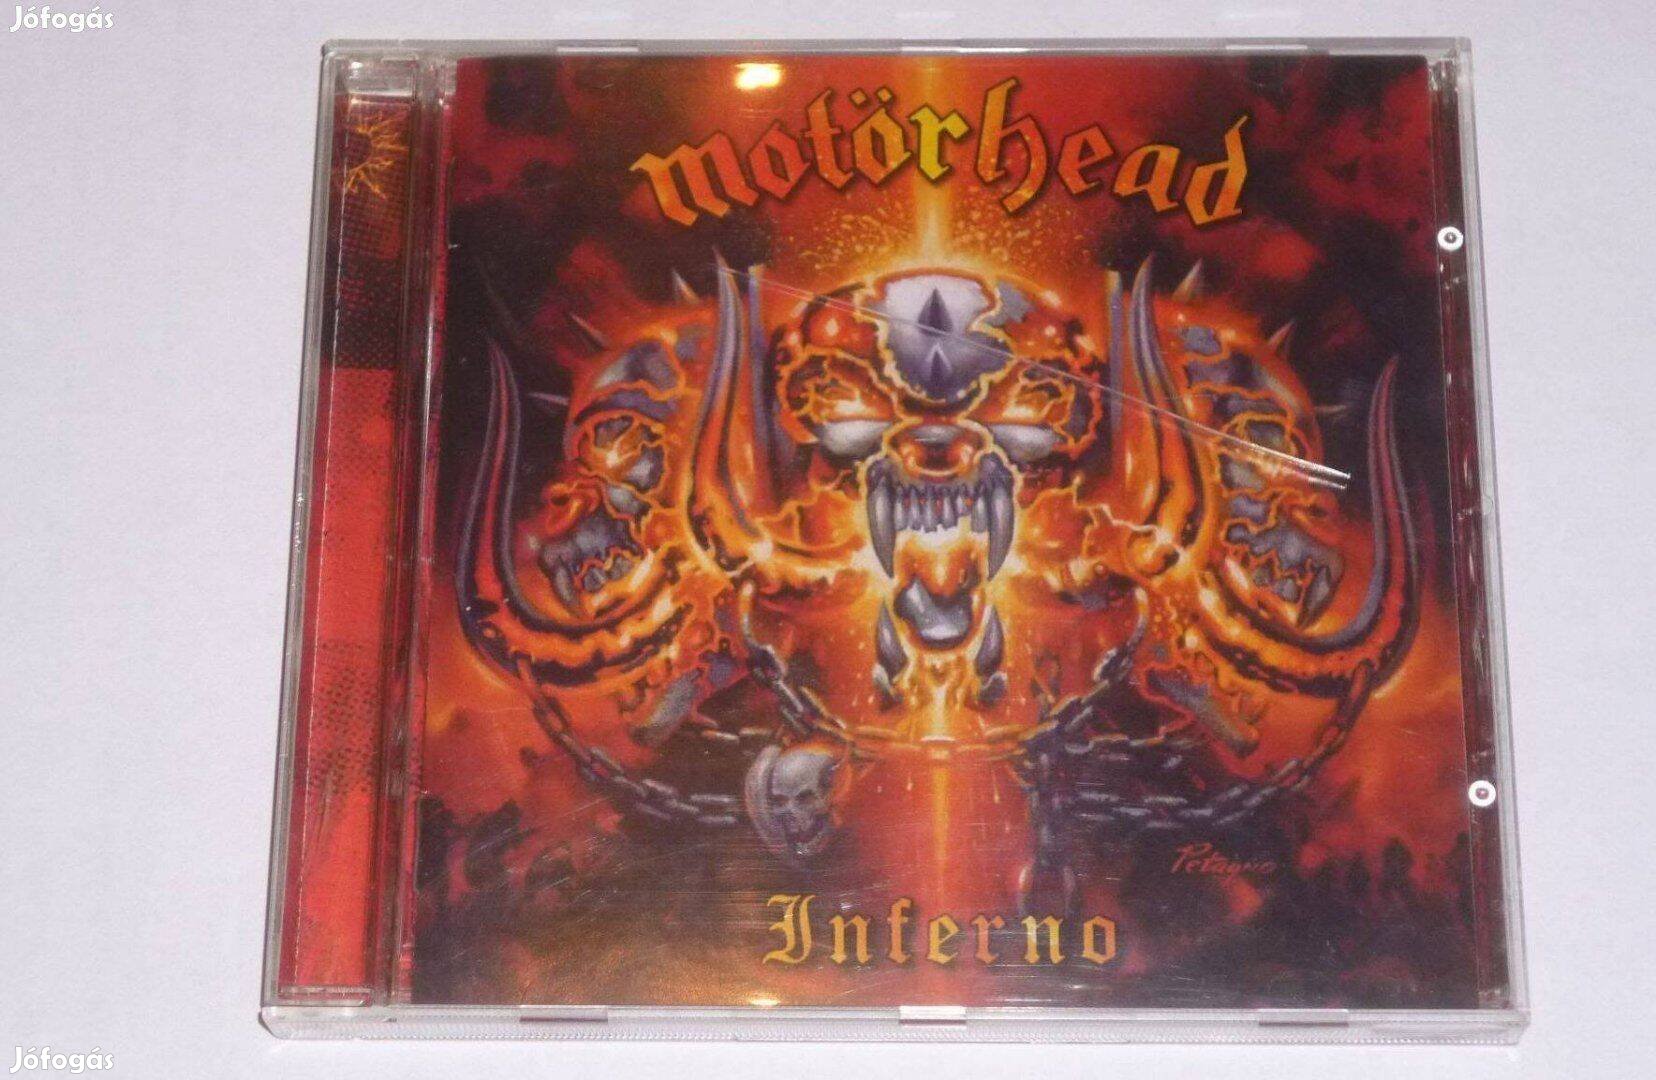 Motörhead - Inferno CD